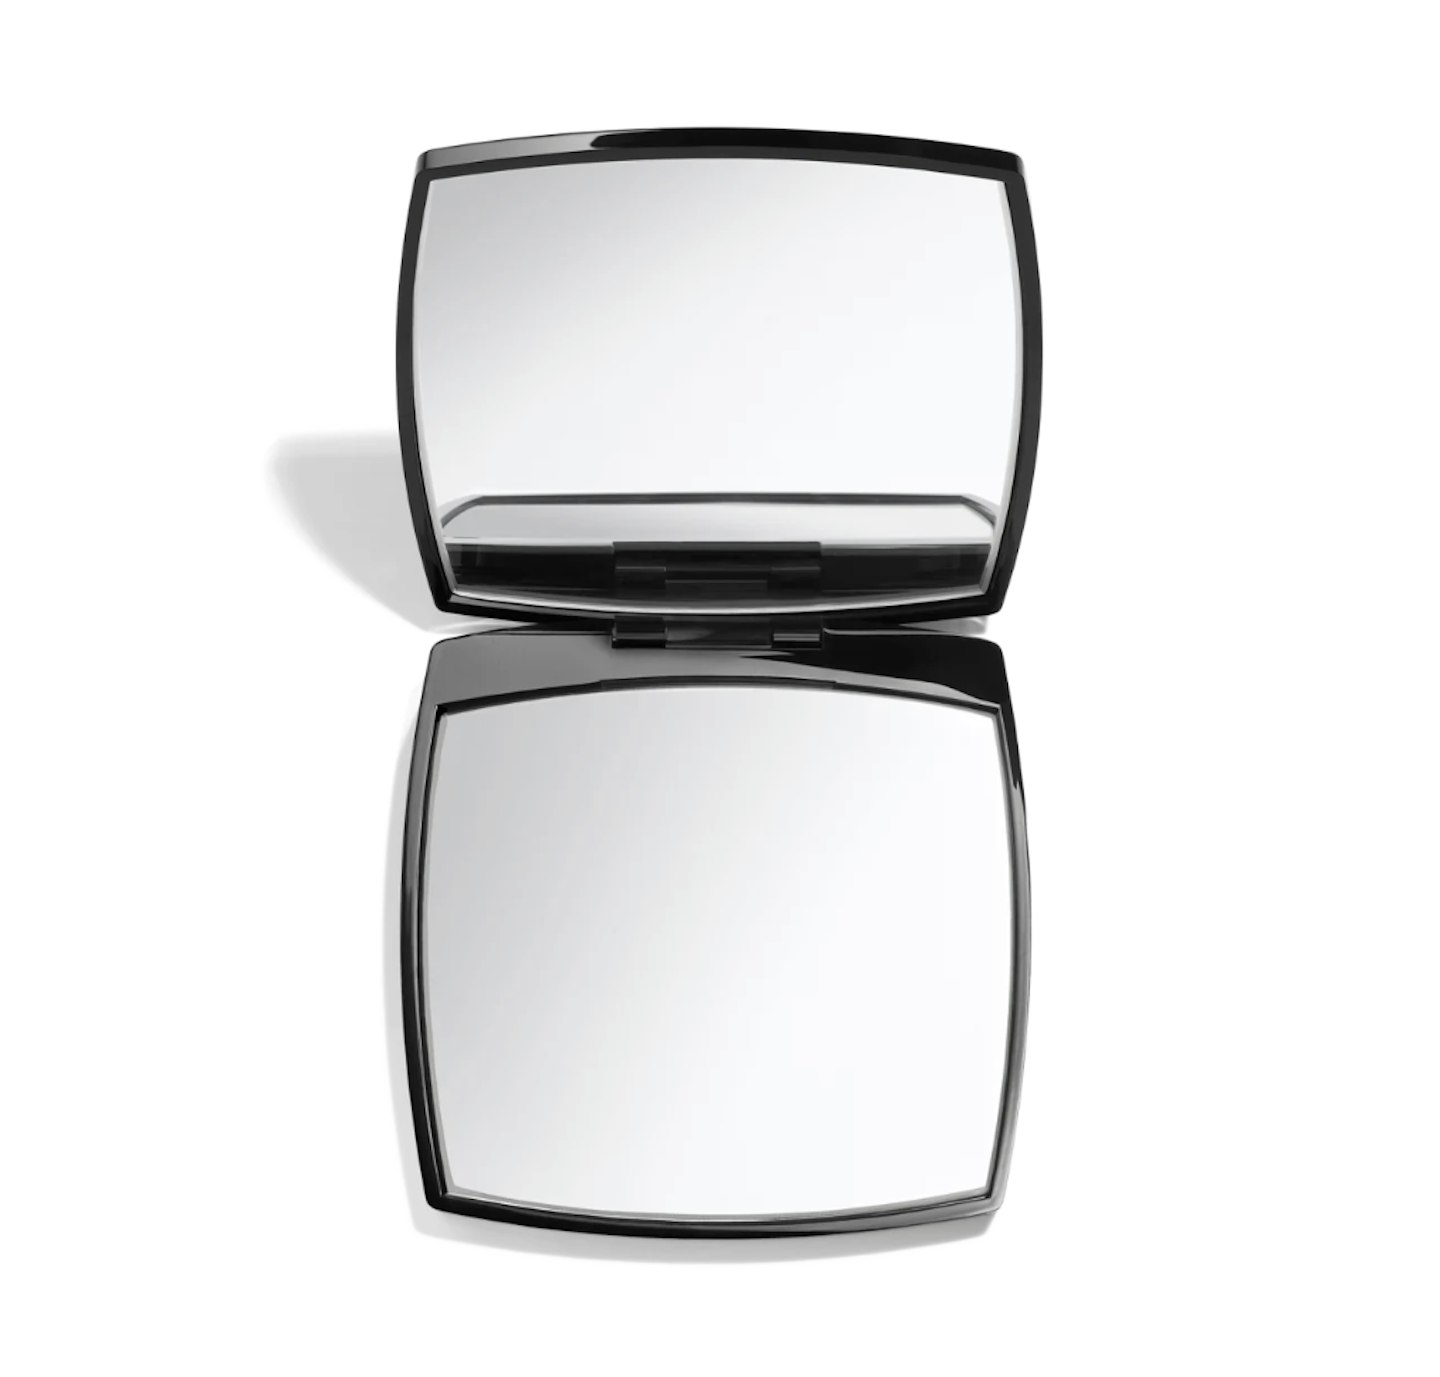 MANIFESTO - FOR A VANITY MIRROR'S SAKE: Chanel's Hand Mirror Clutch